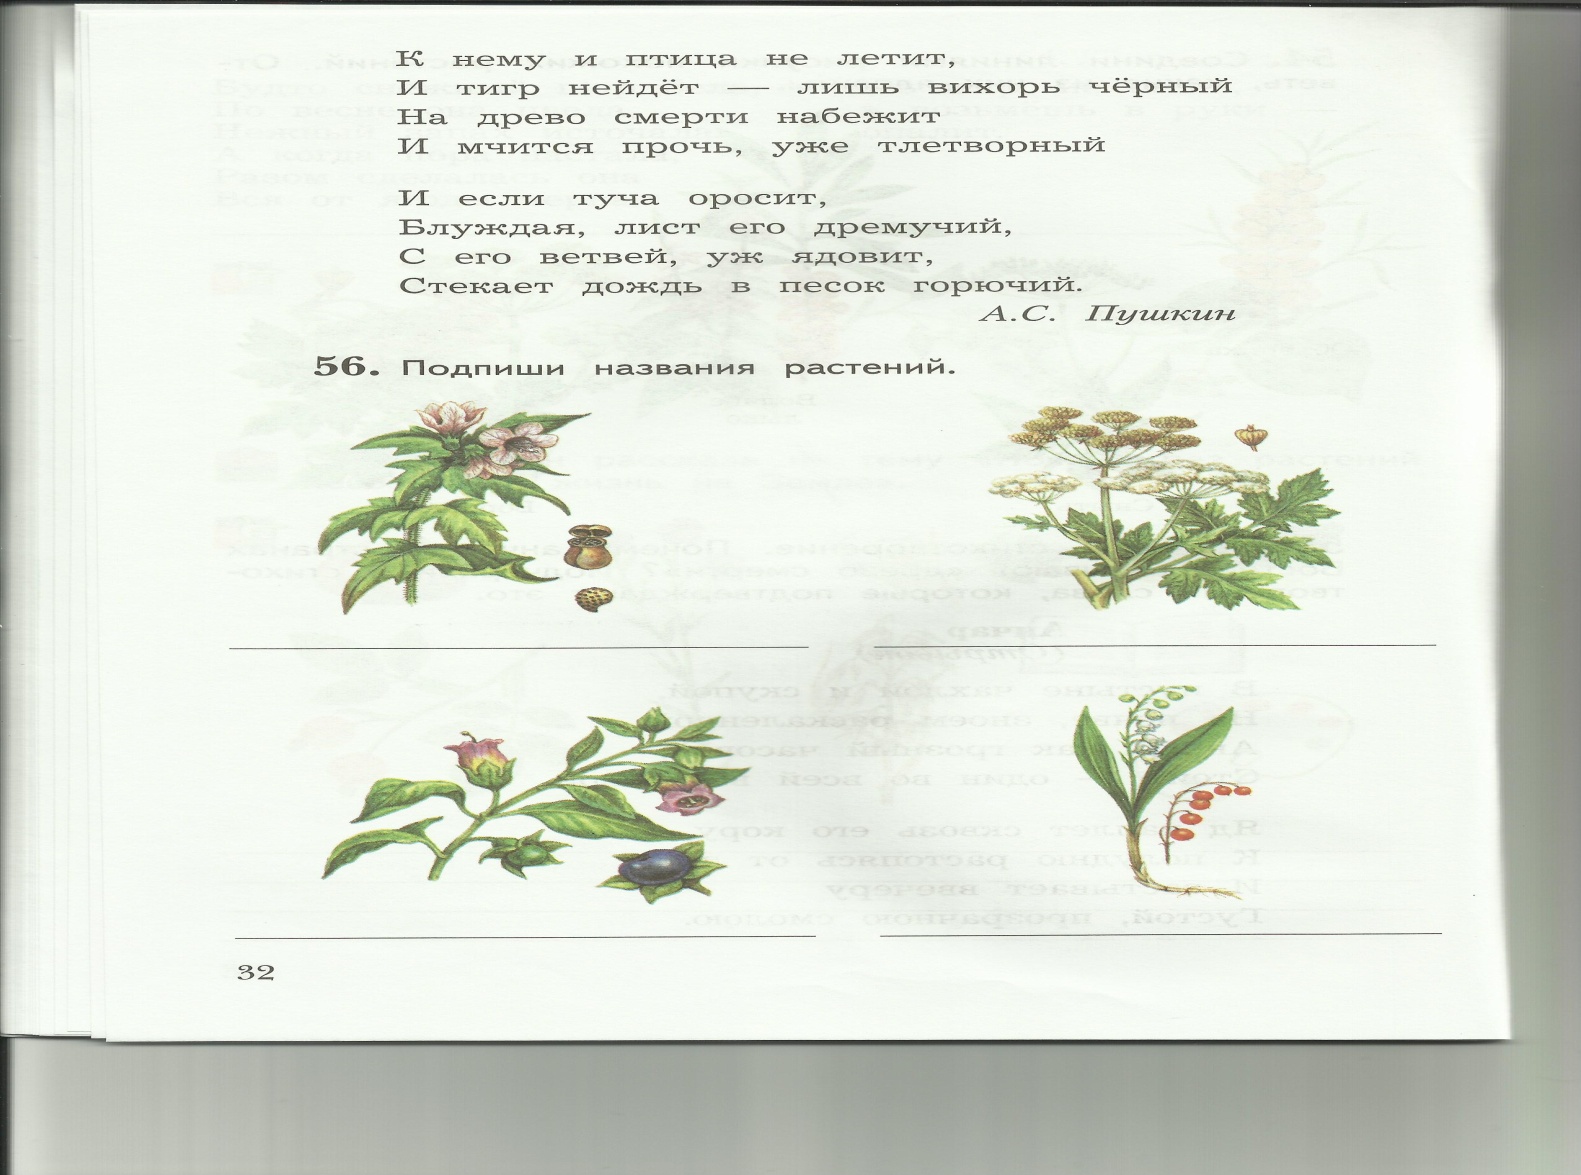 Рабочая тетрадь по курсу Мир растенийдля 8 класса школы 8 вида спецкласс